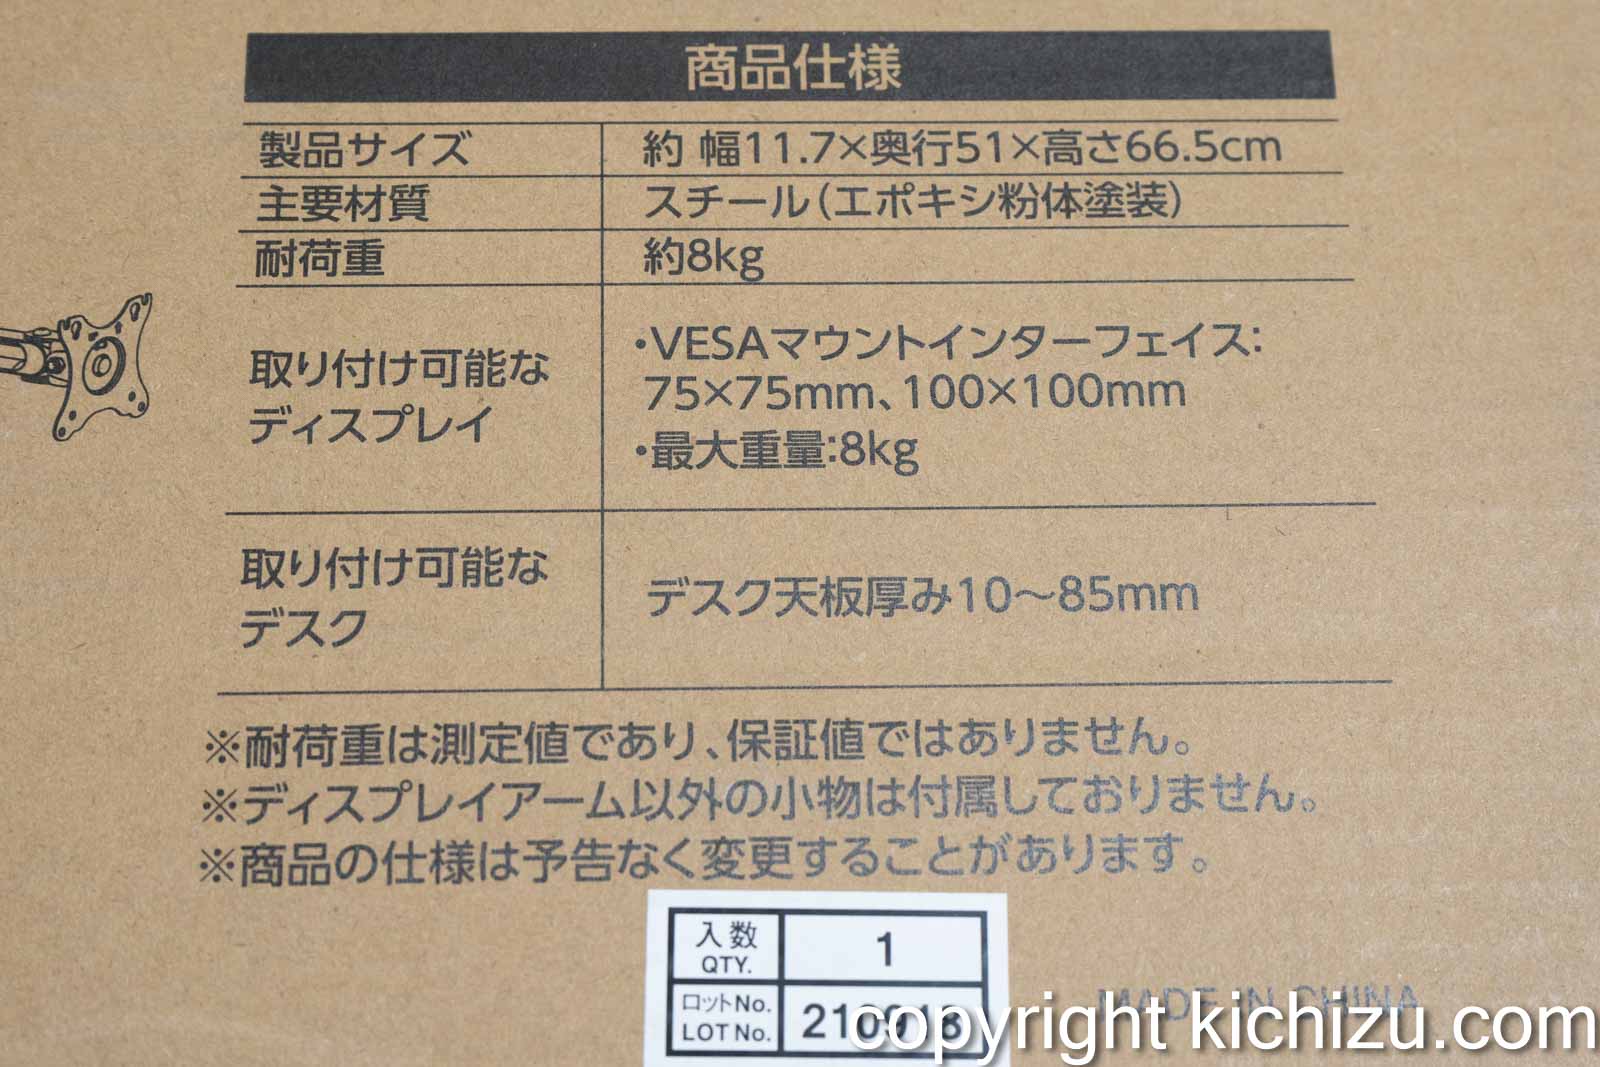 アイリスオーヤマ モニターアーム DA-4550購入レビュー | 吉図's